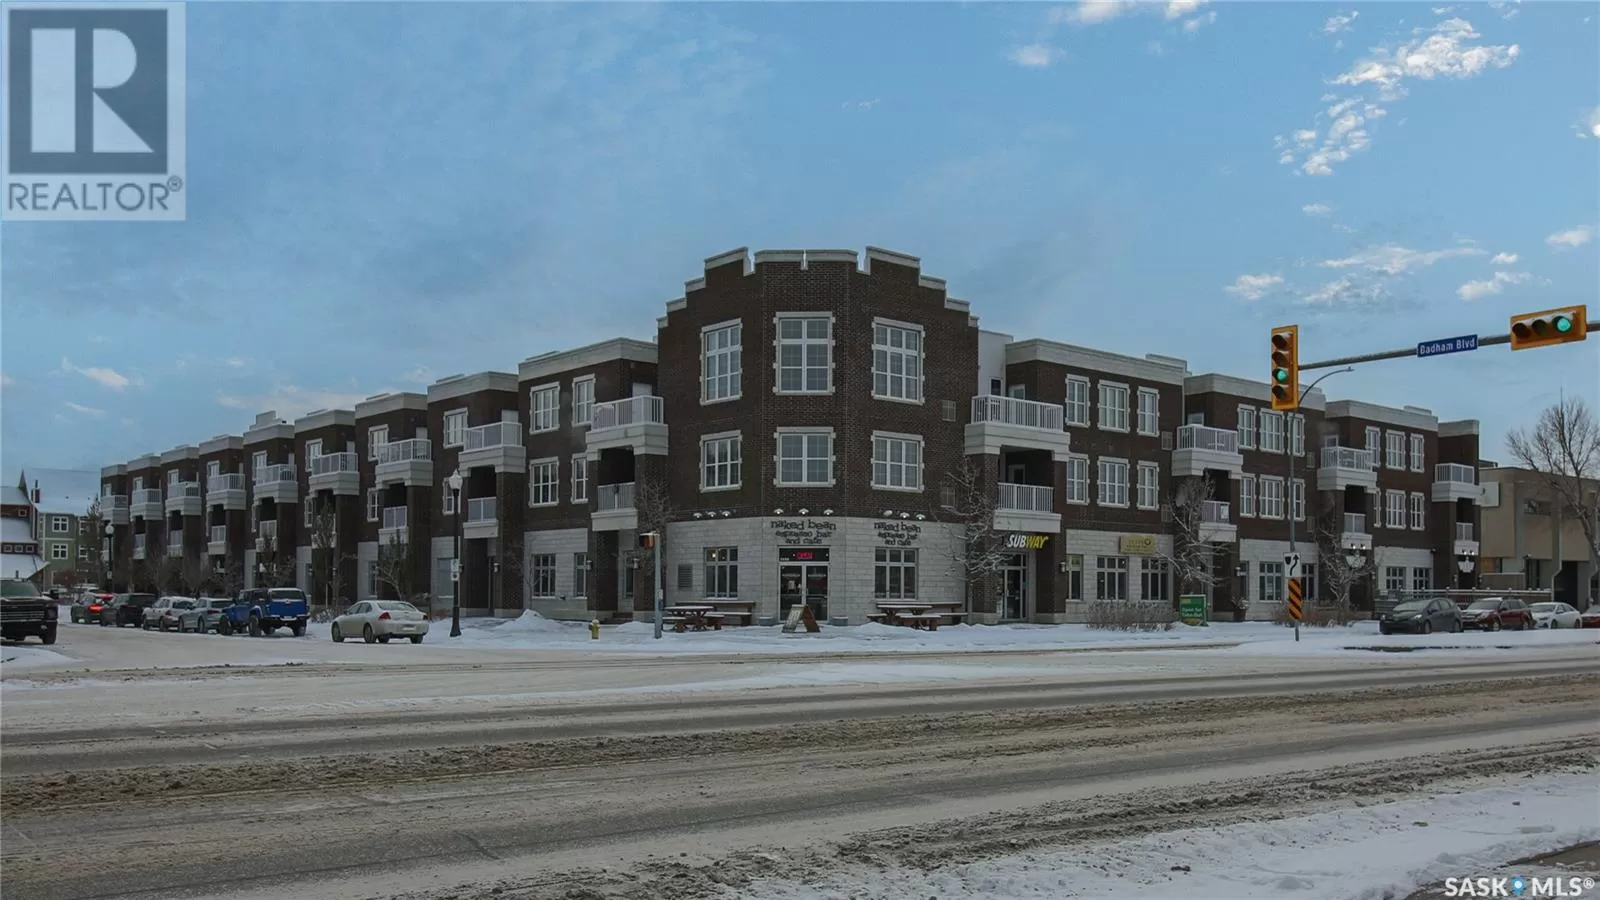 Apartment for rent: 302 1715 Badham Boulevard, Regina, Saskatchewan S4P 0L9